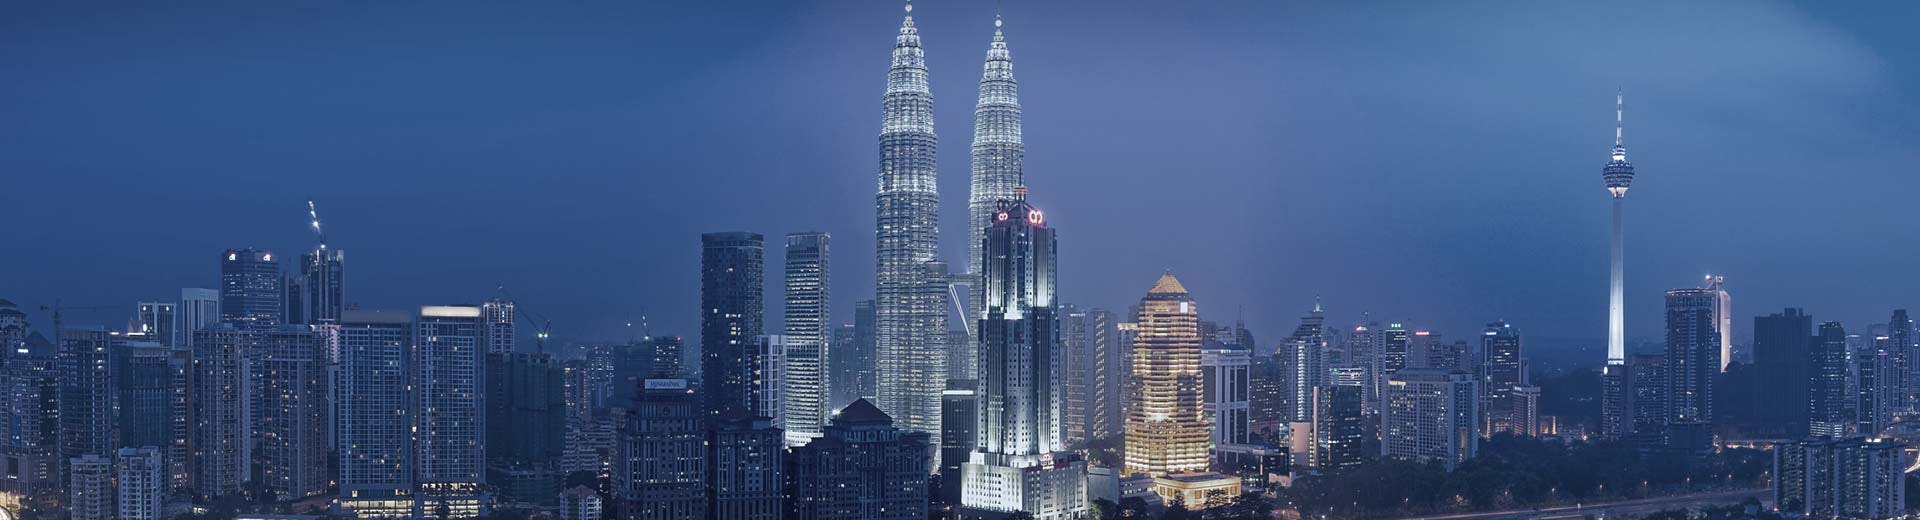 Las inminentes torres gemelas de Kuala Lumpur iluminan el cielo oscuro.